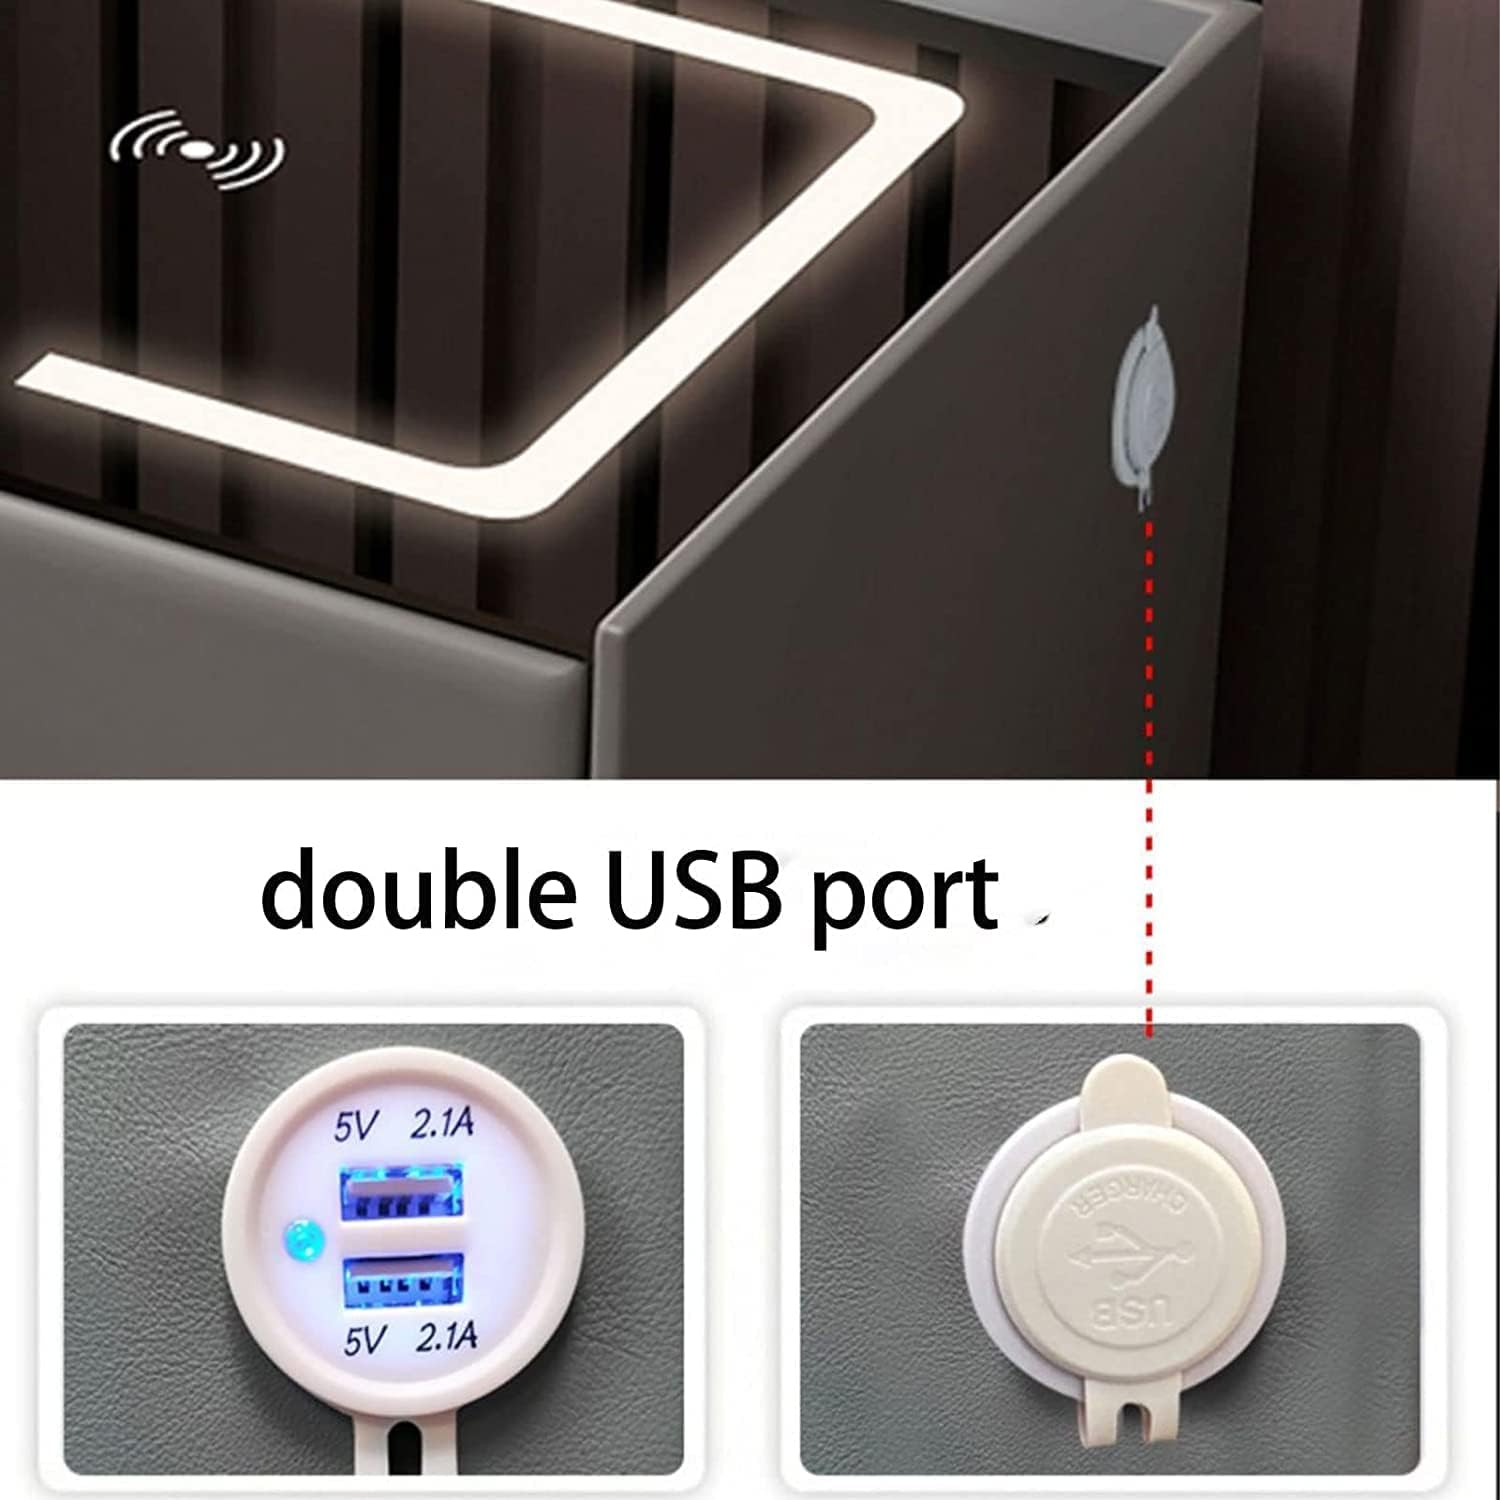 Mesita de noche LED inteligente con puerto de carga USB/inalámbrico, bloqueo de huellas dactilares y altavoz Bluetooth - Mesita de madera minimalista de 46/59 cm